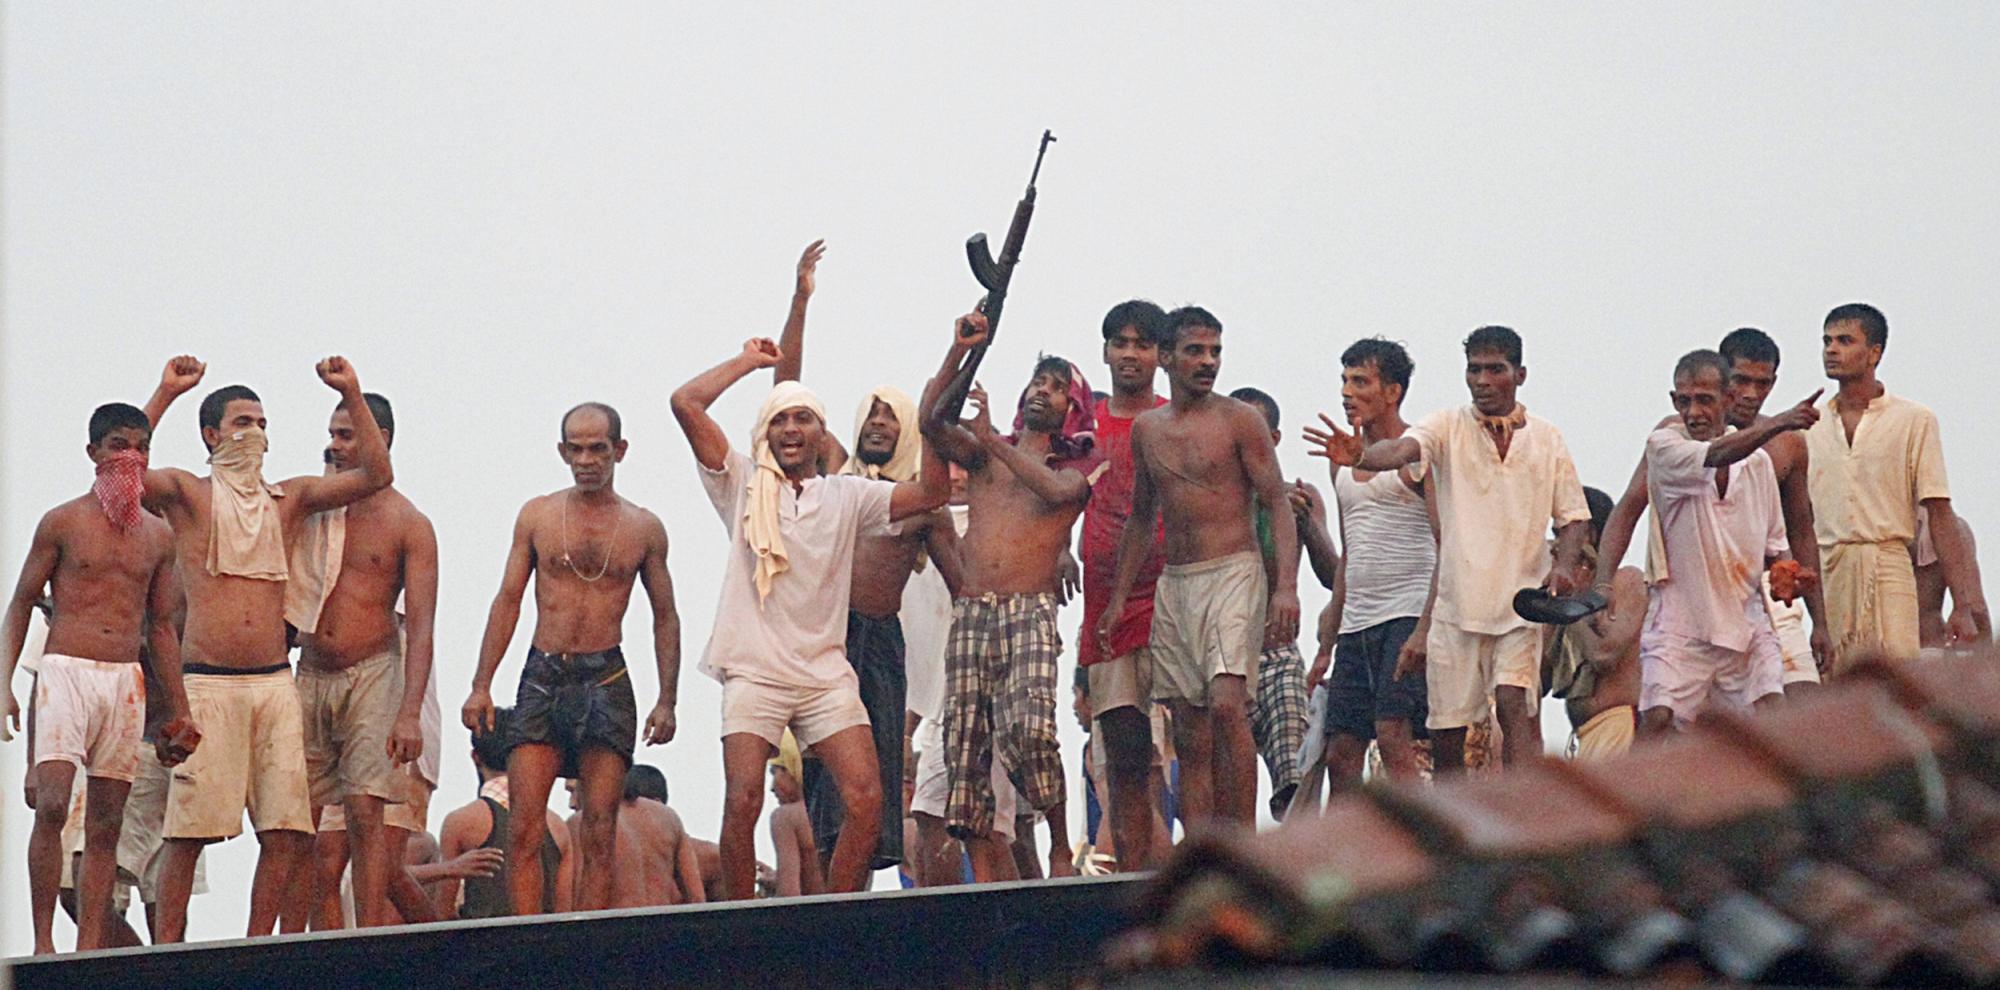 斯里兰卡最大监狱发生骚乱至少27人死亡 军方出手控制局势